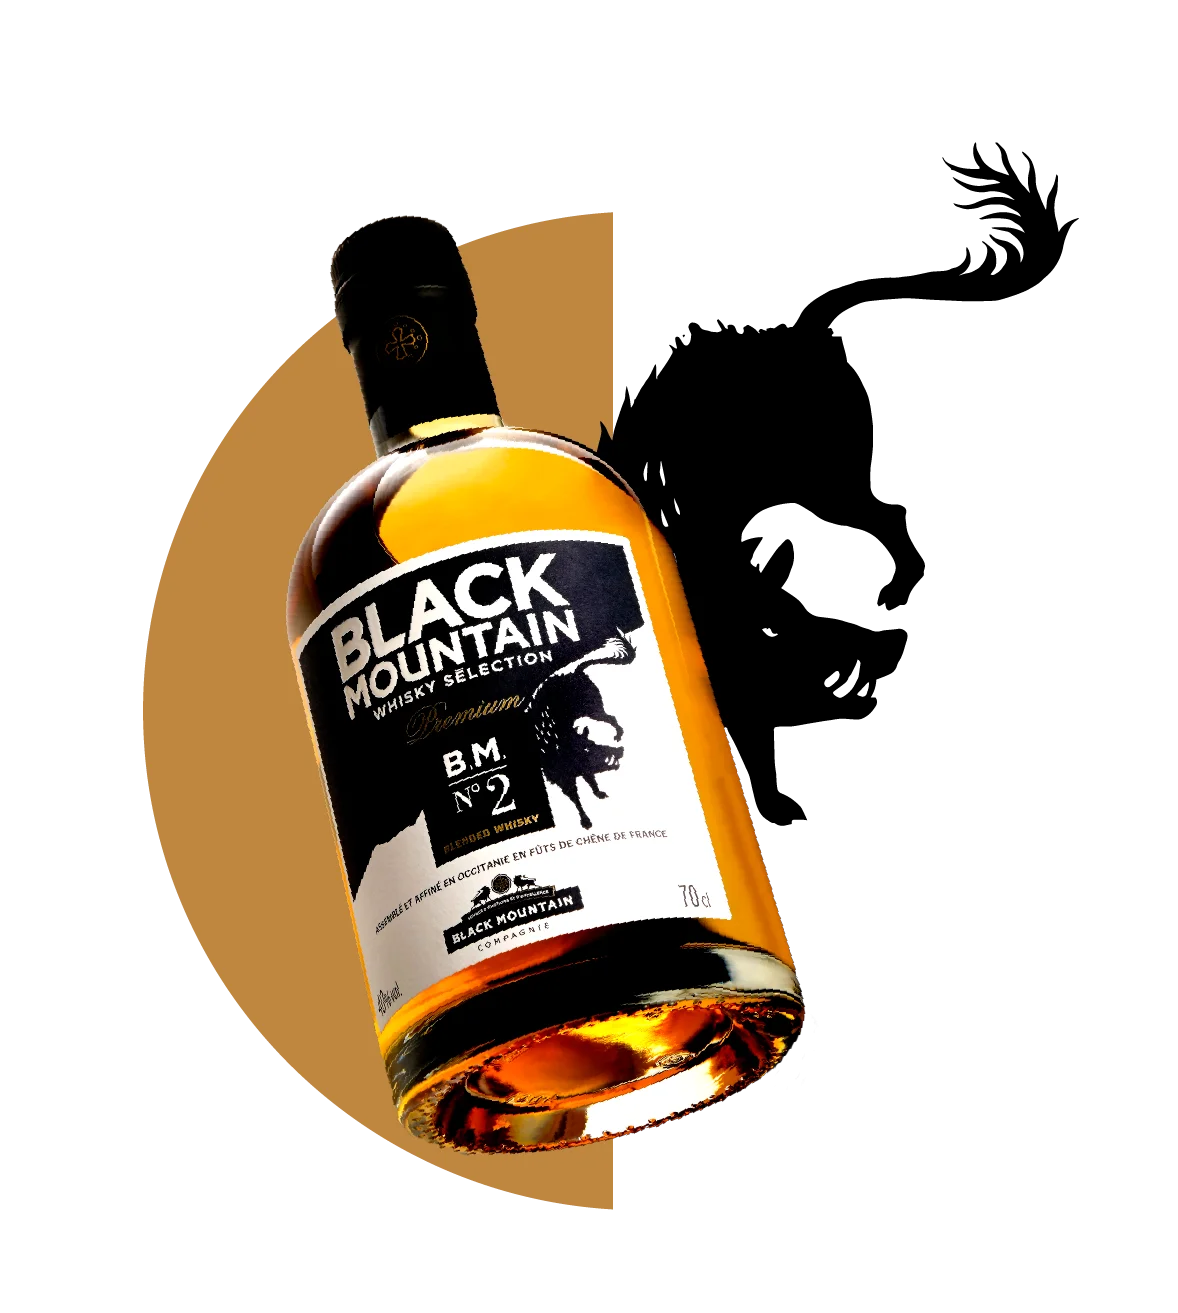 Coffret Dégustation Whisky Black Mountain n°